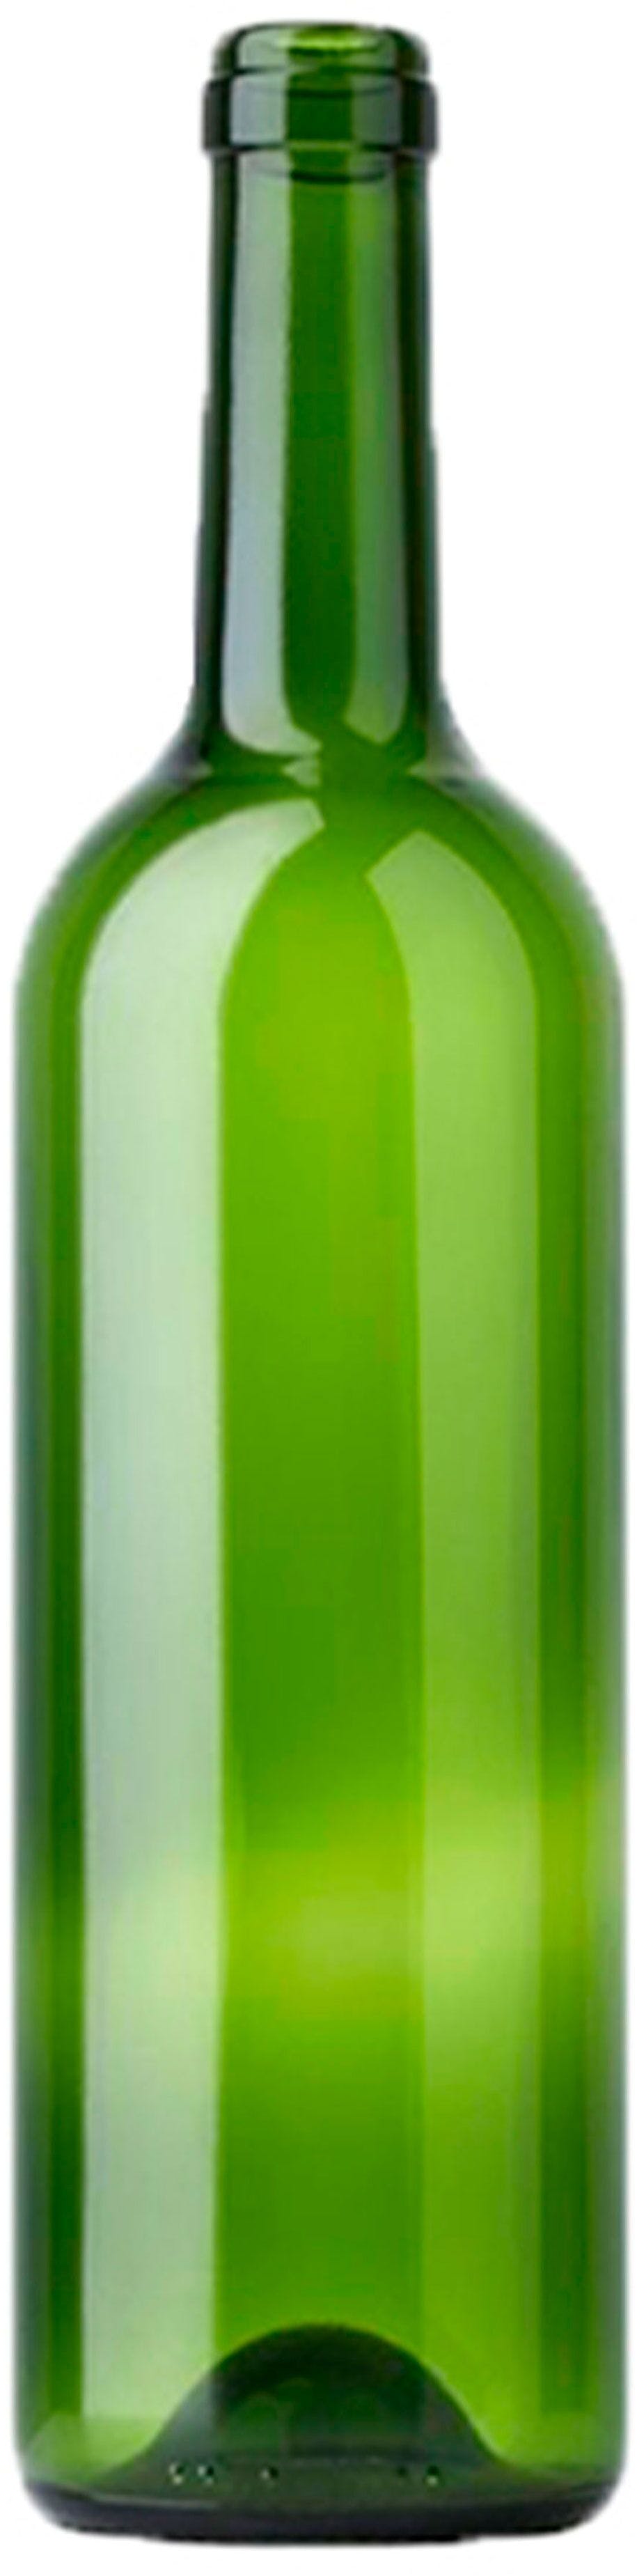 Bottiglia bordolese   VIP 750 ml BG-Sughero